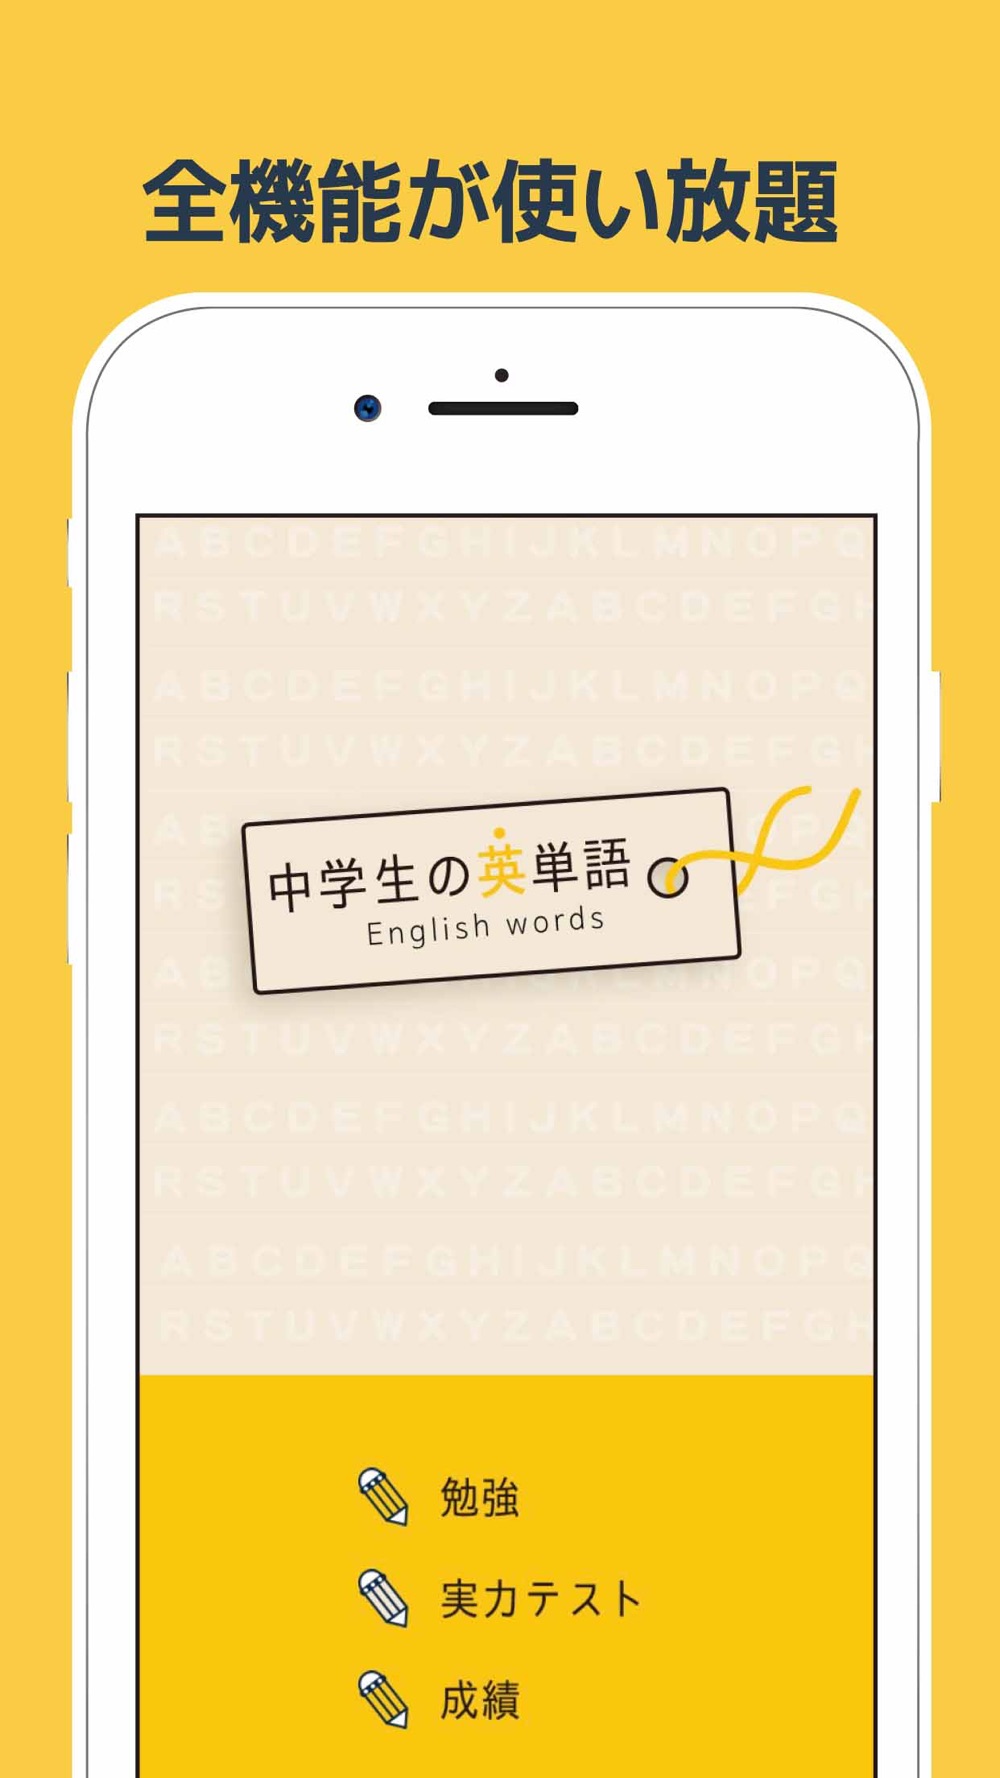 中学生の英単語 高校受験用英語勉強アプリ Free Download App For Iphone Steprimo Com